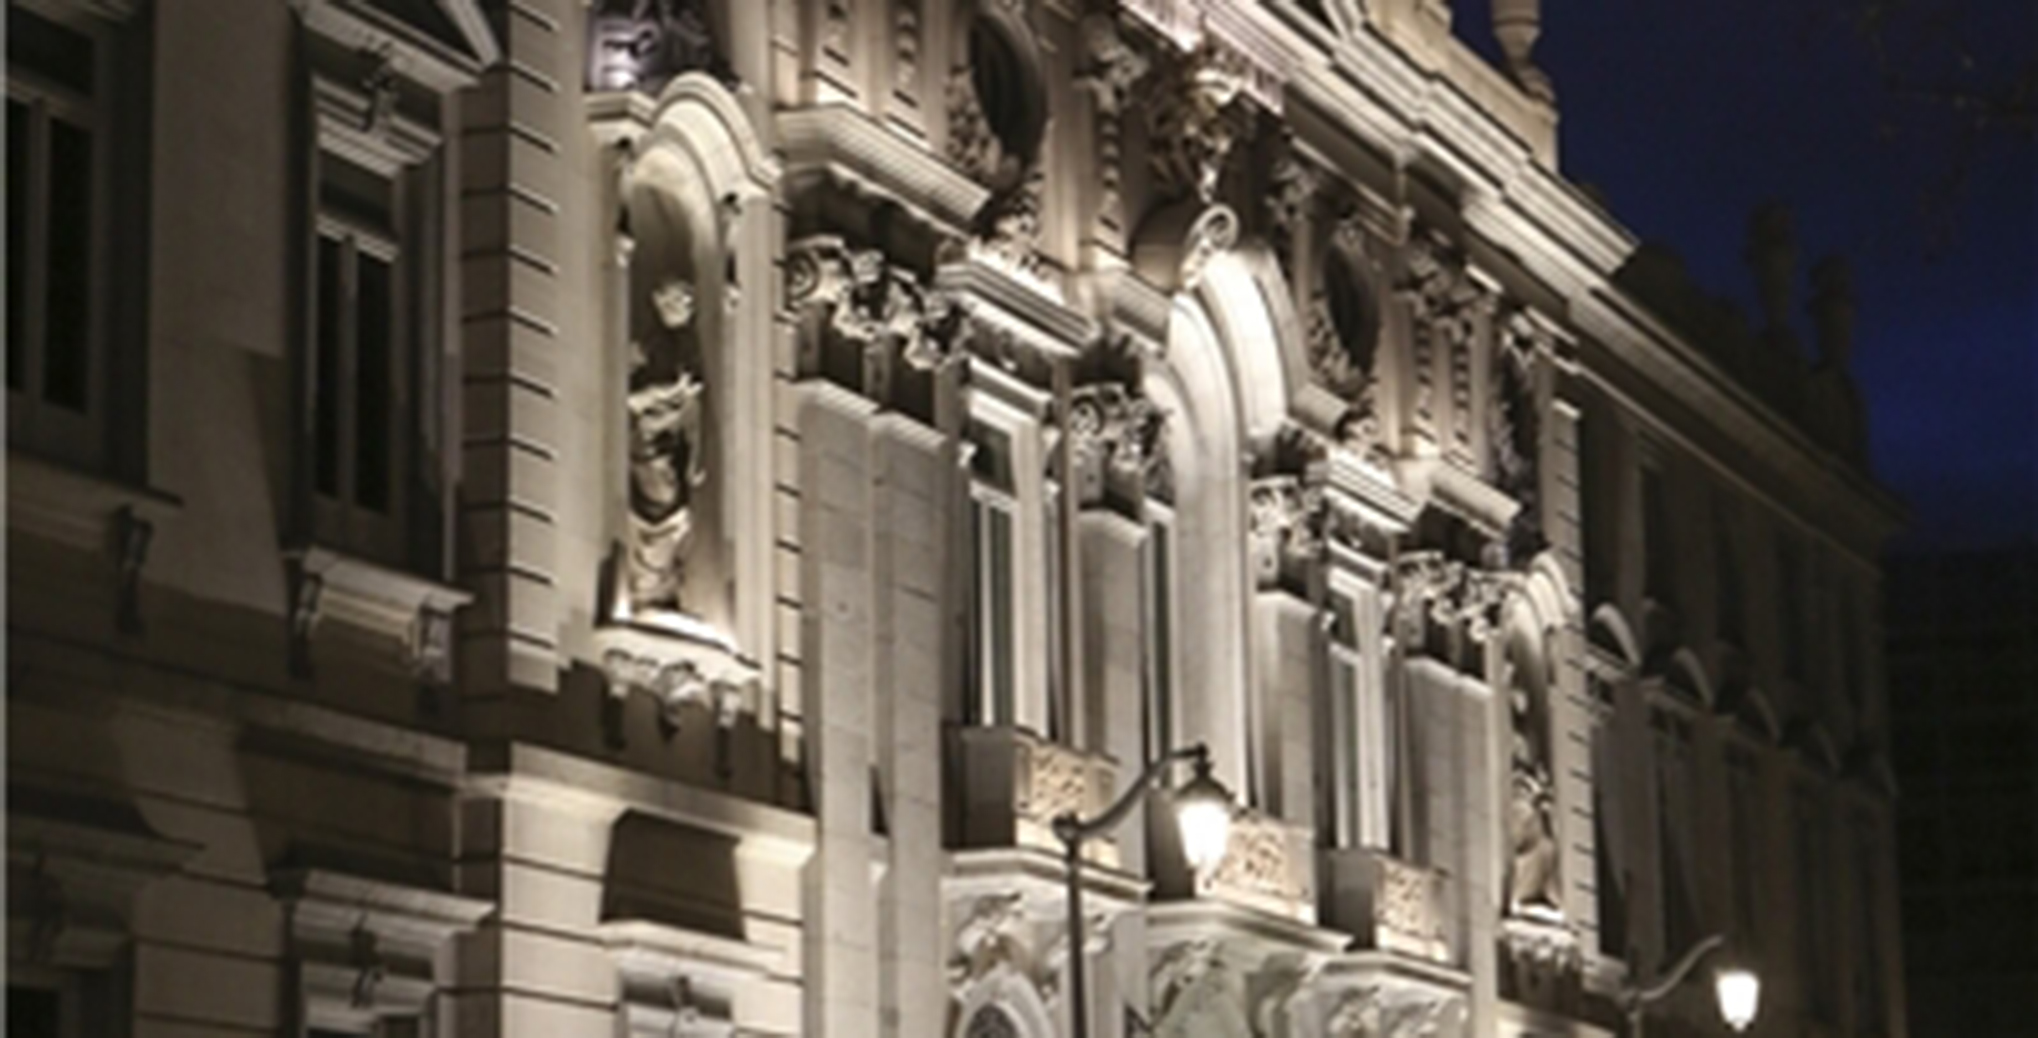 Iberdrola revitaliza el Palacio del Tribunal Supremo de Madrid con una novedosa iluminación externa